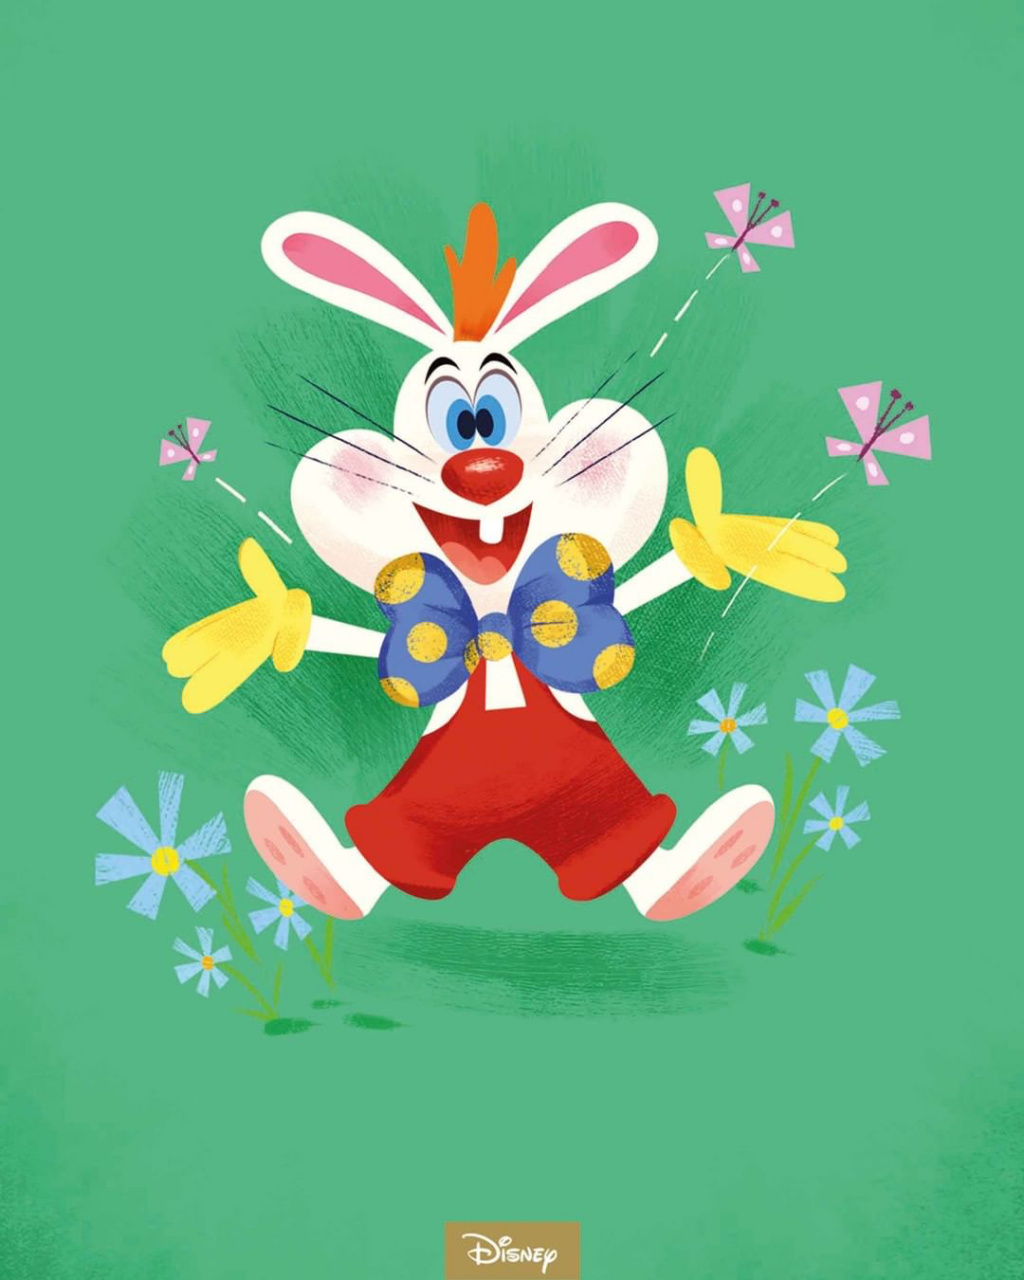 兔年来认识一下迪士尼的小兔子们吧～ 图① 兔小姐和桑普(miss bunny